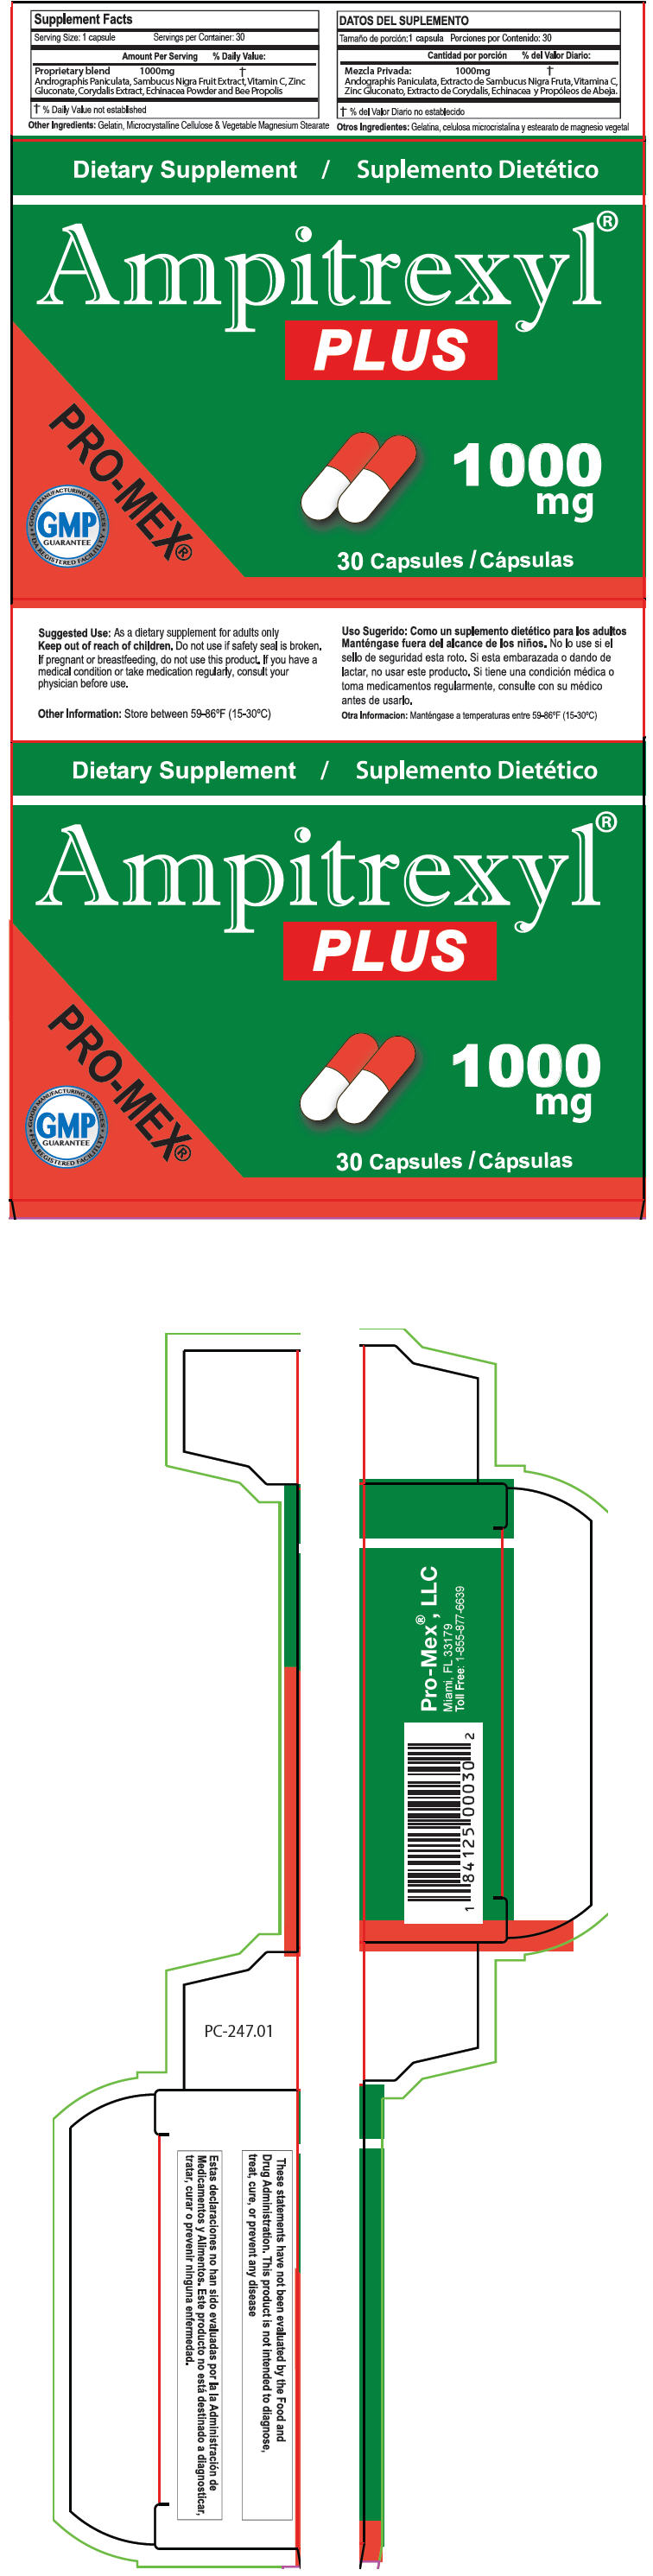 PRINCIPAL DISPLAY PANEL - 30 Capsule Blister Pack Carton